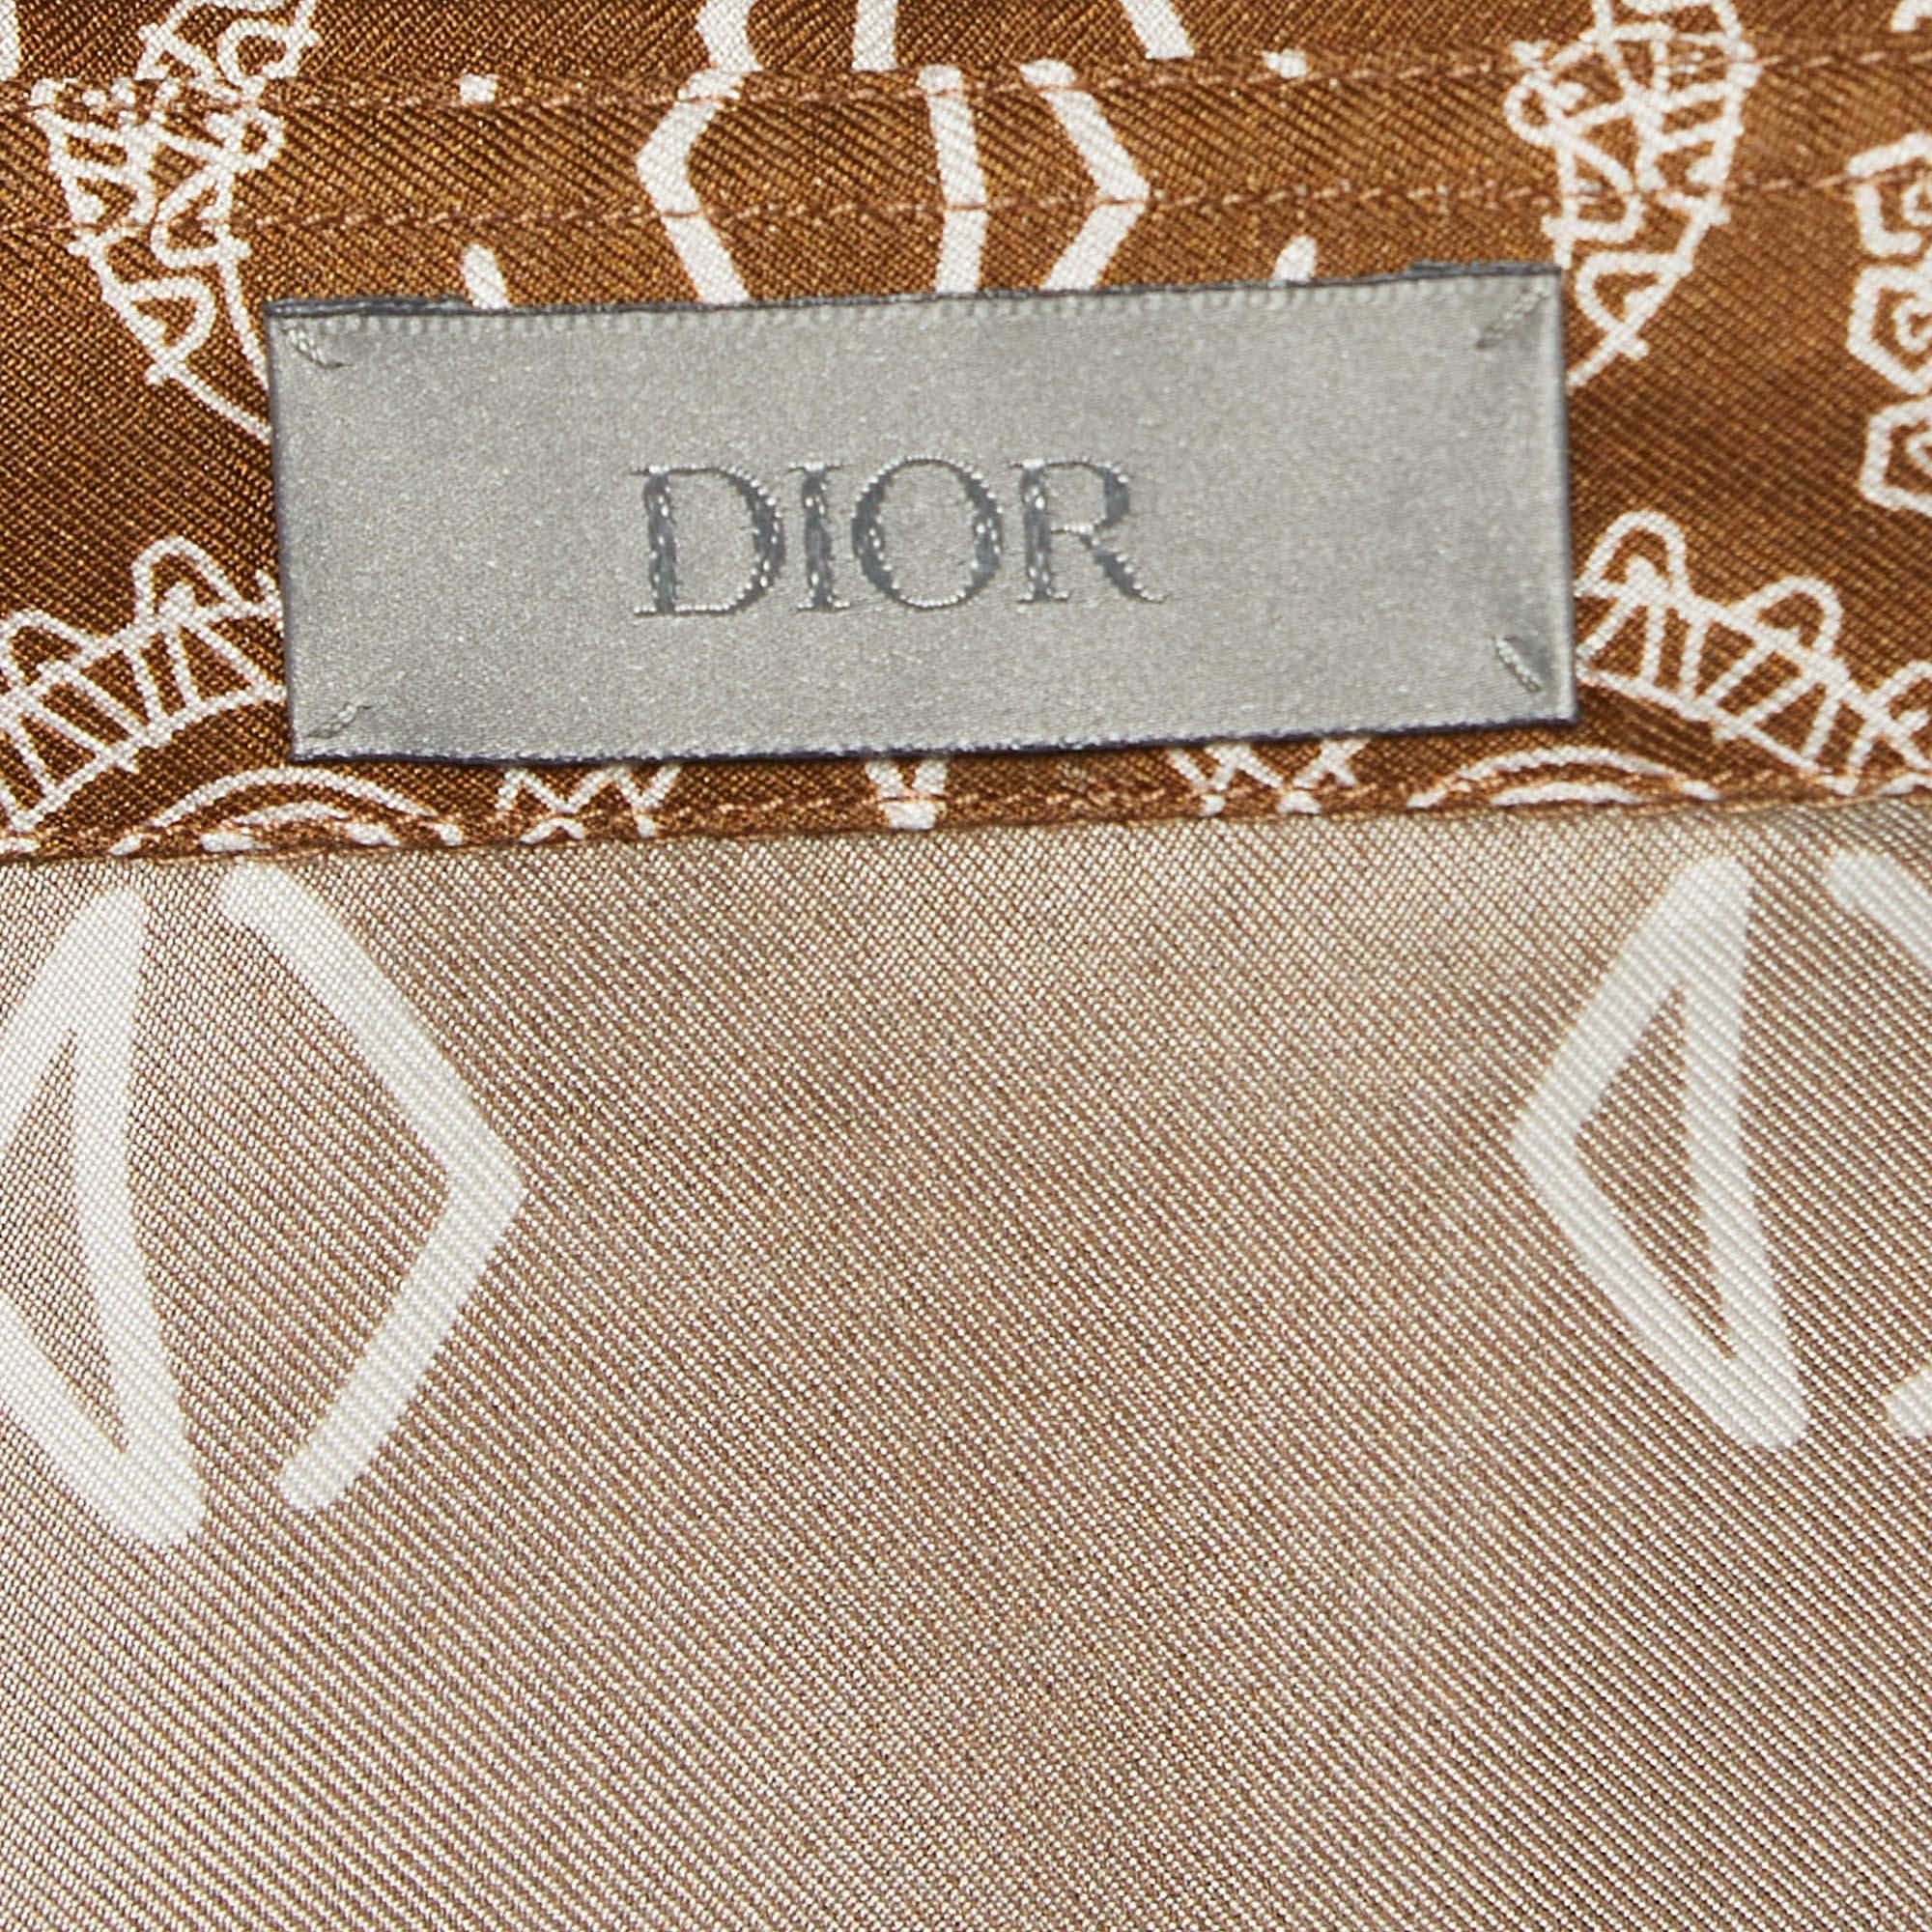 Men's Dior Homme Brown Bandana Motif Print Silk Buttoned Half Sleeve Shirt M